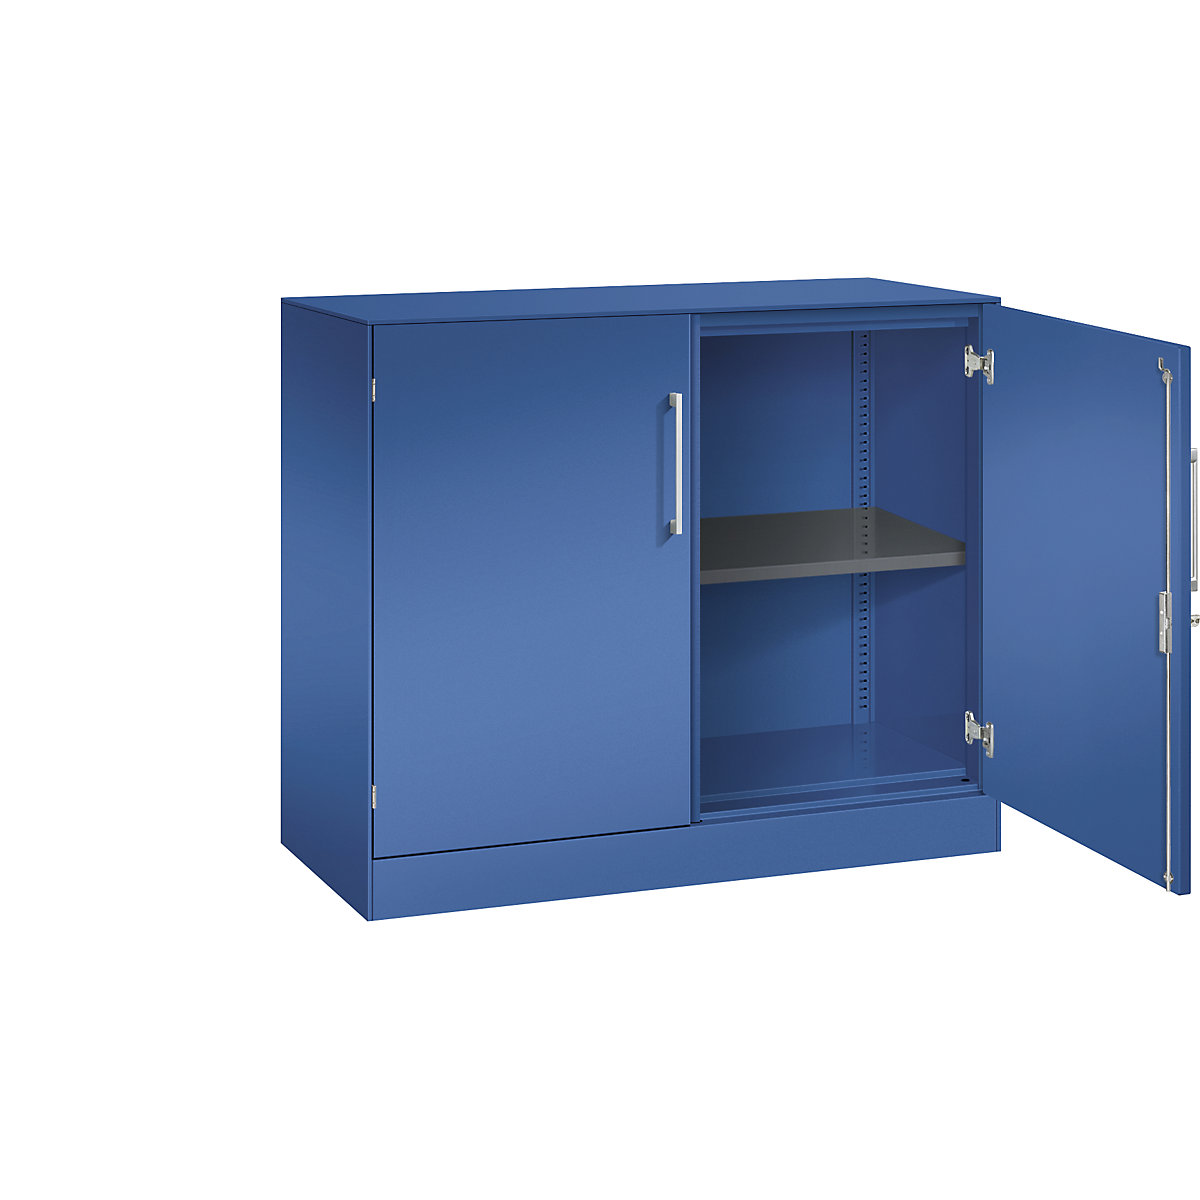 C+P – Skříň s otočnými dveřmi ASISTO, výška 897 mm, šířka 1000 mm, 1 police, enciánová modrá/enciánová modrá